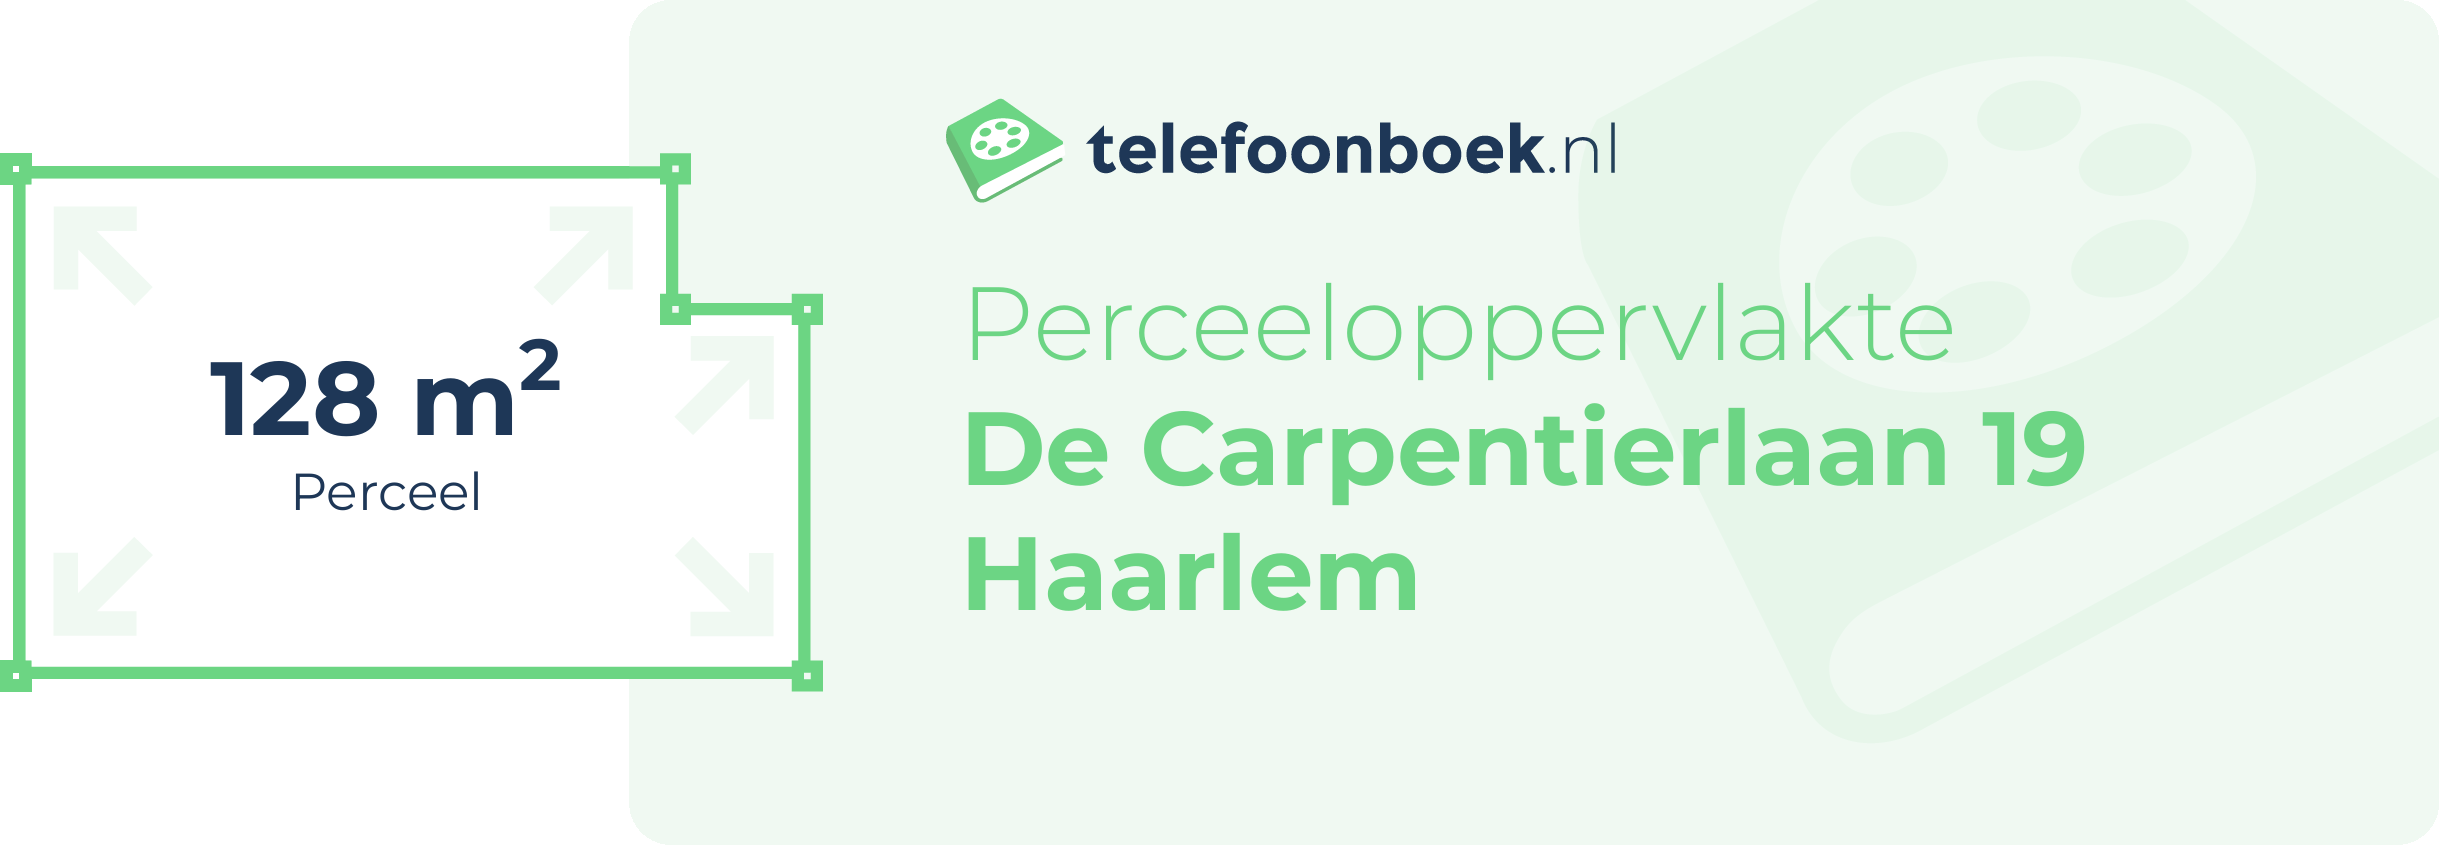 Perceeloppervlakte De Carpentierlaan 19 Haarlem